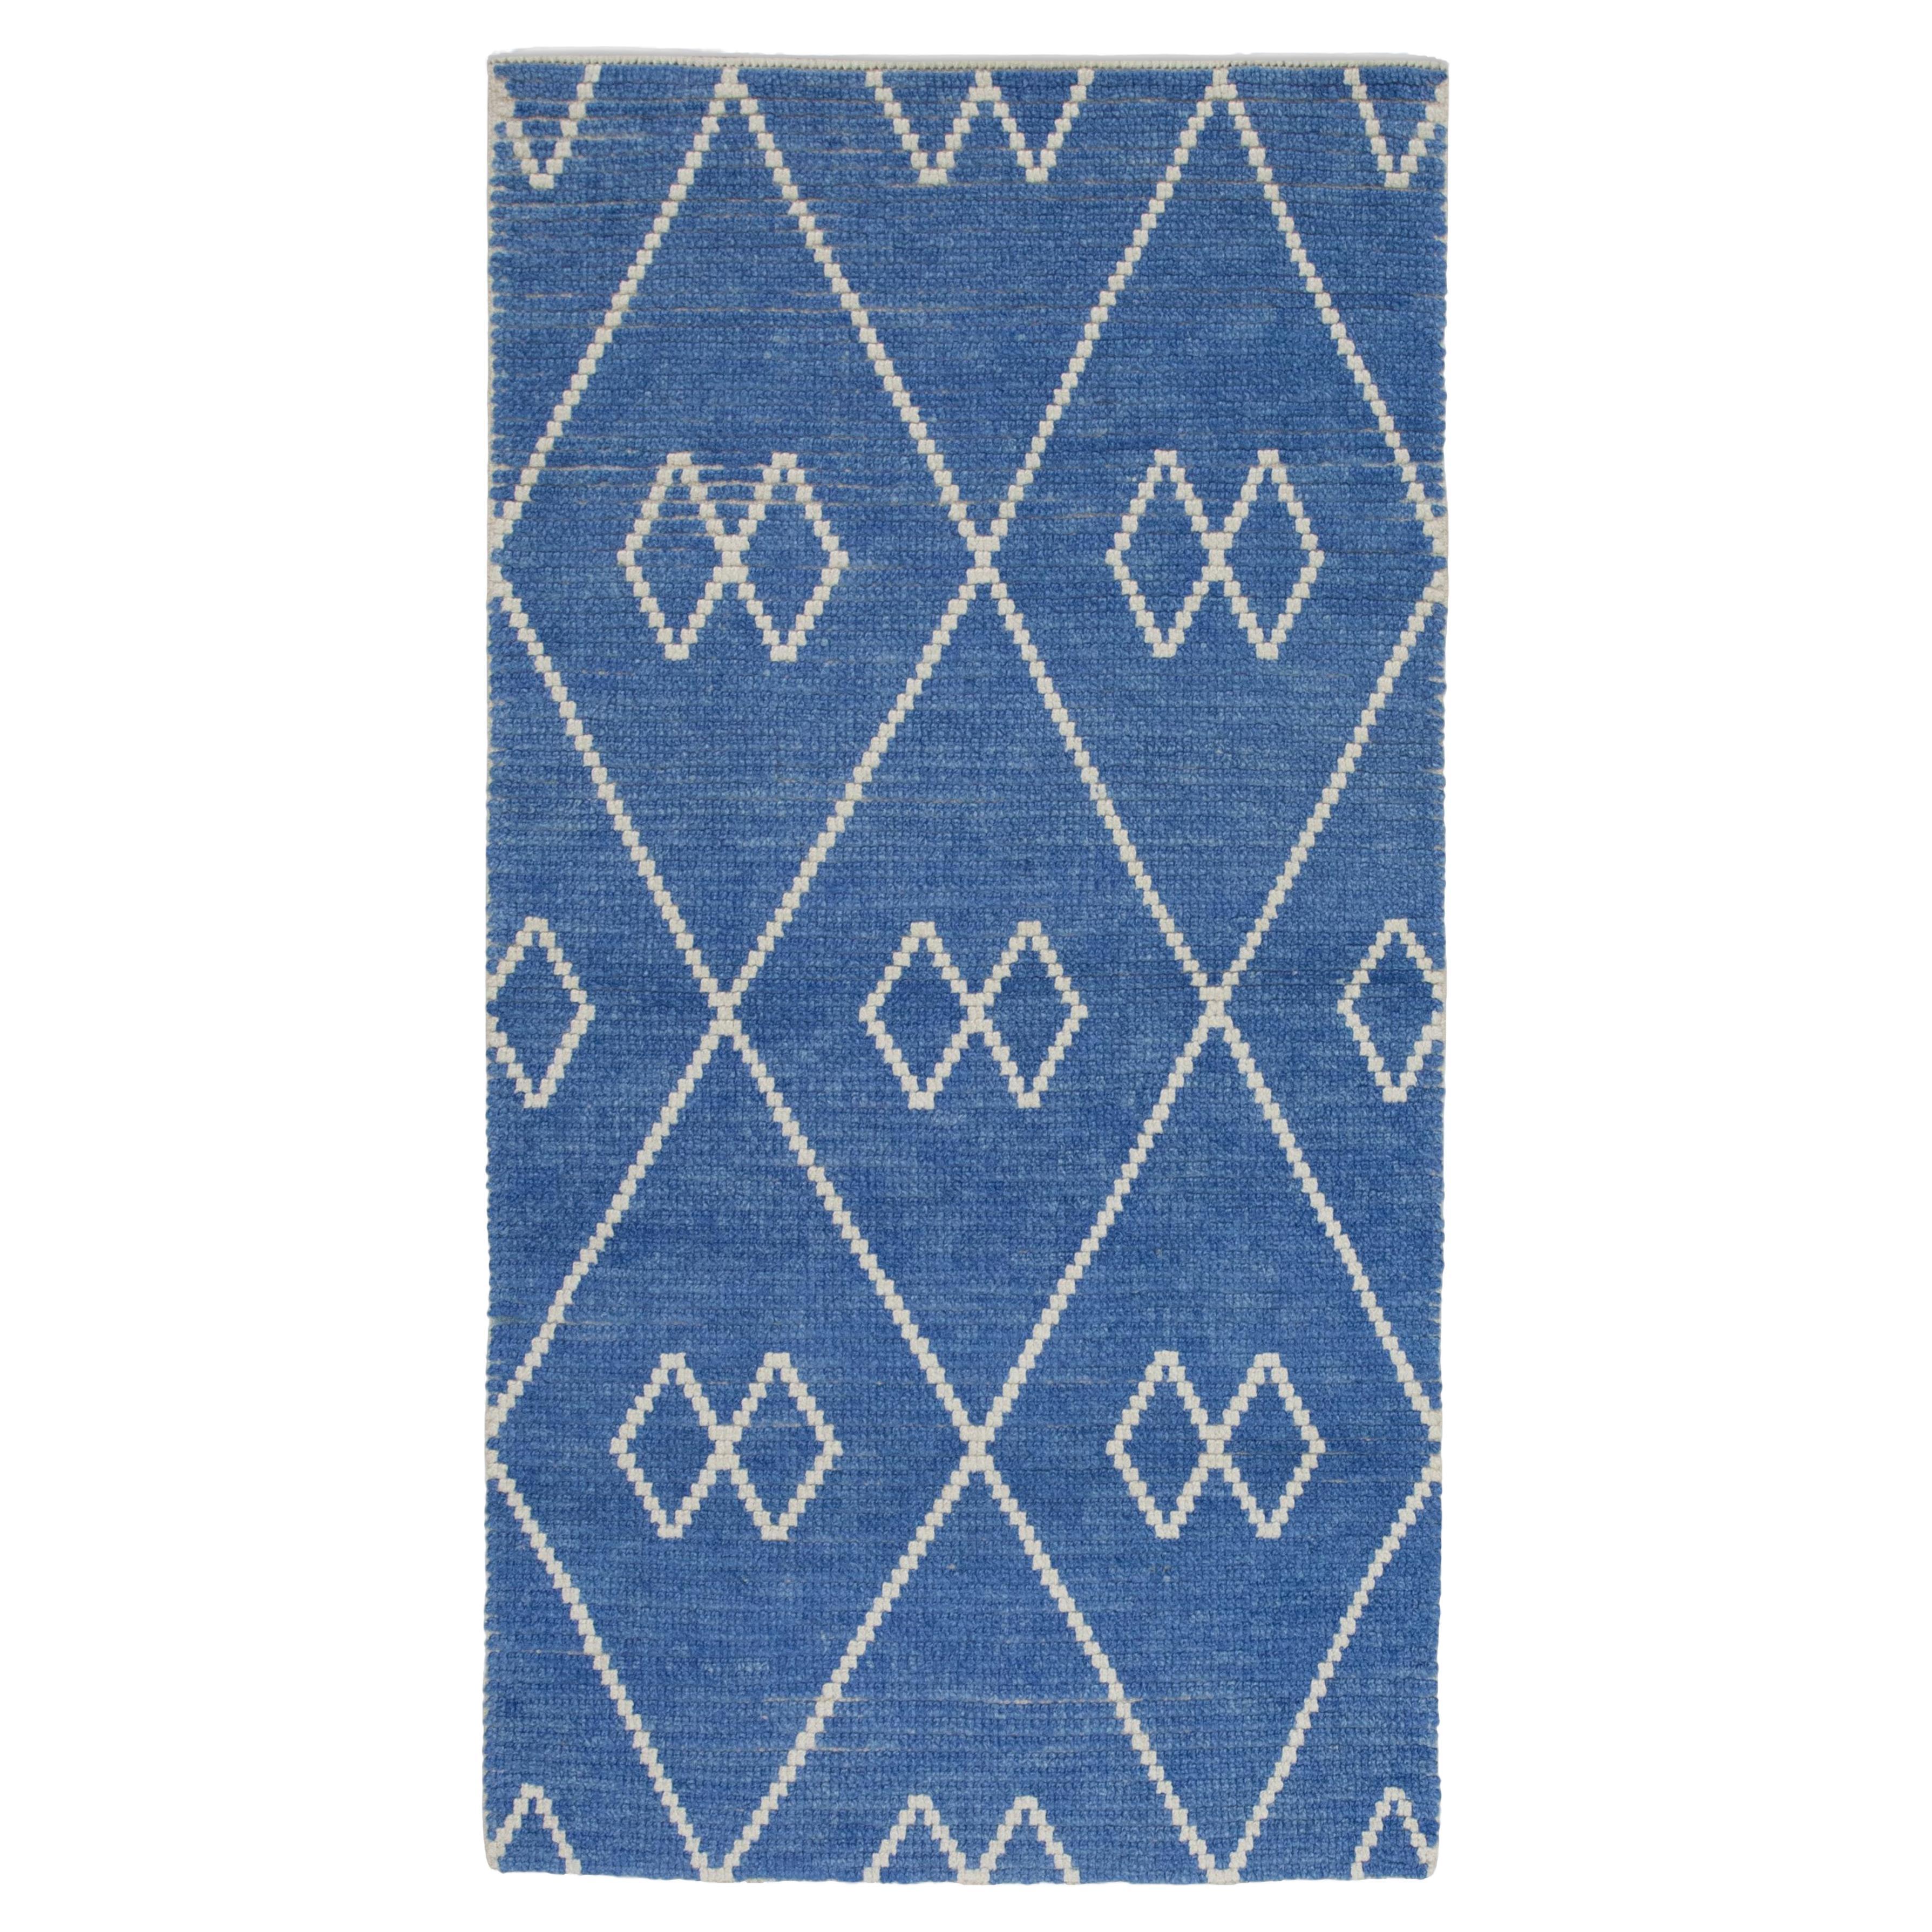  Handmade Wool Tulu Rug in Geometric Design 2'8" x 4'11"